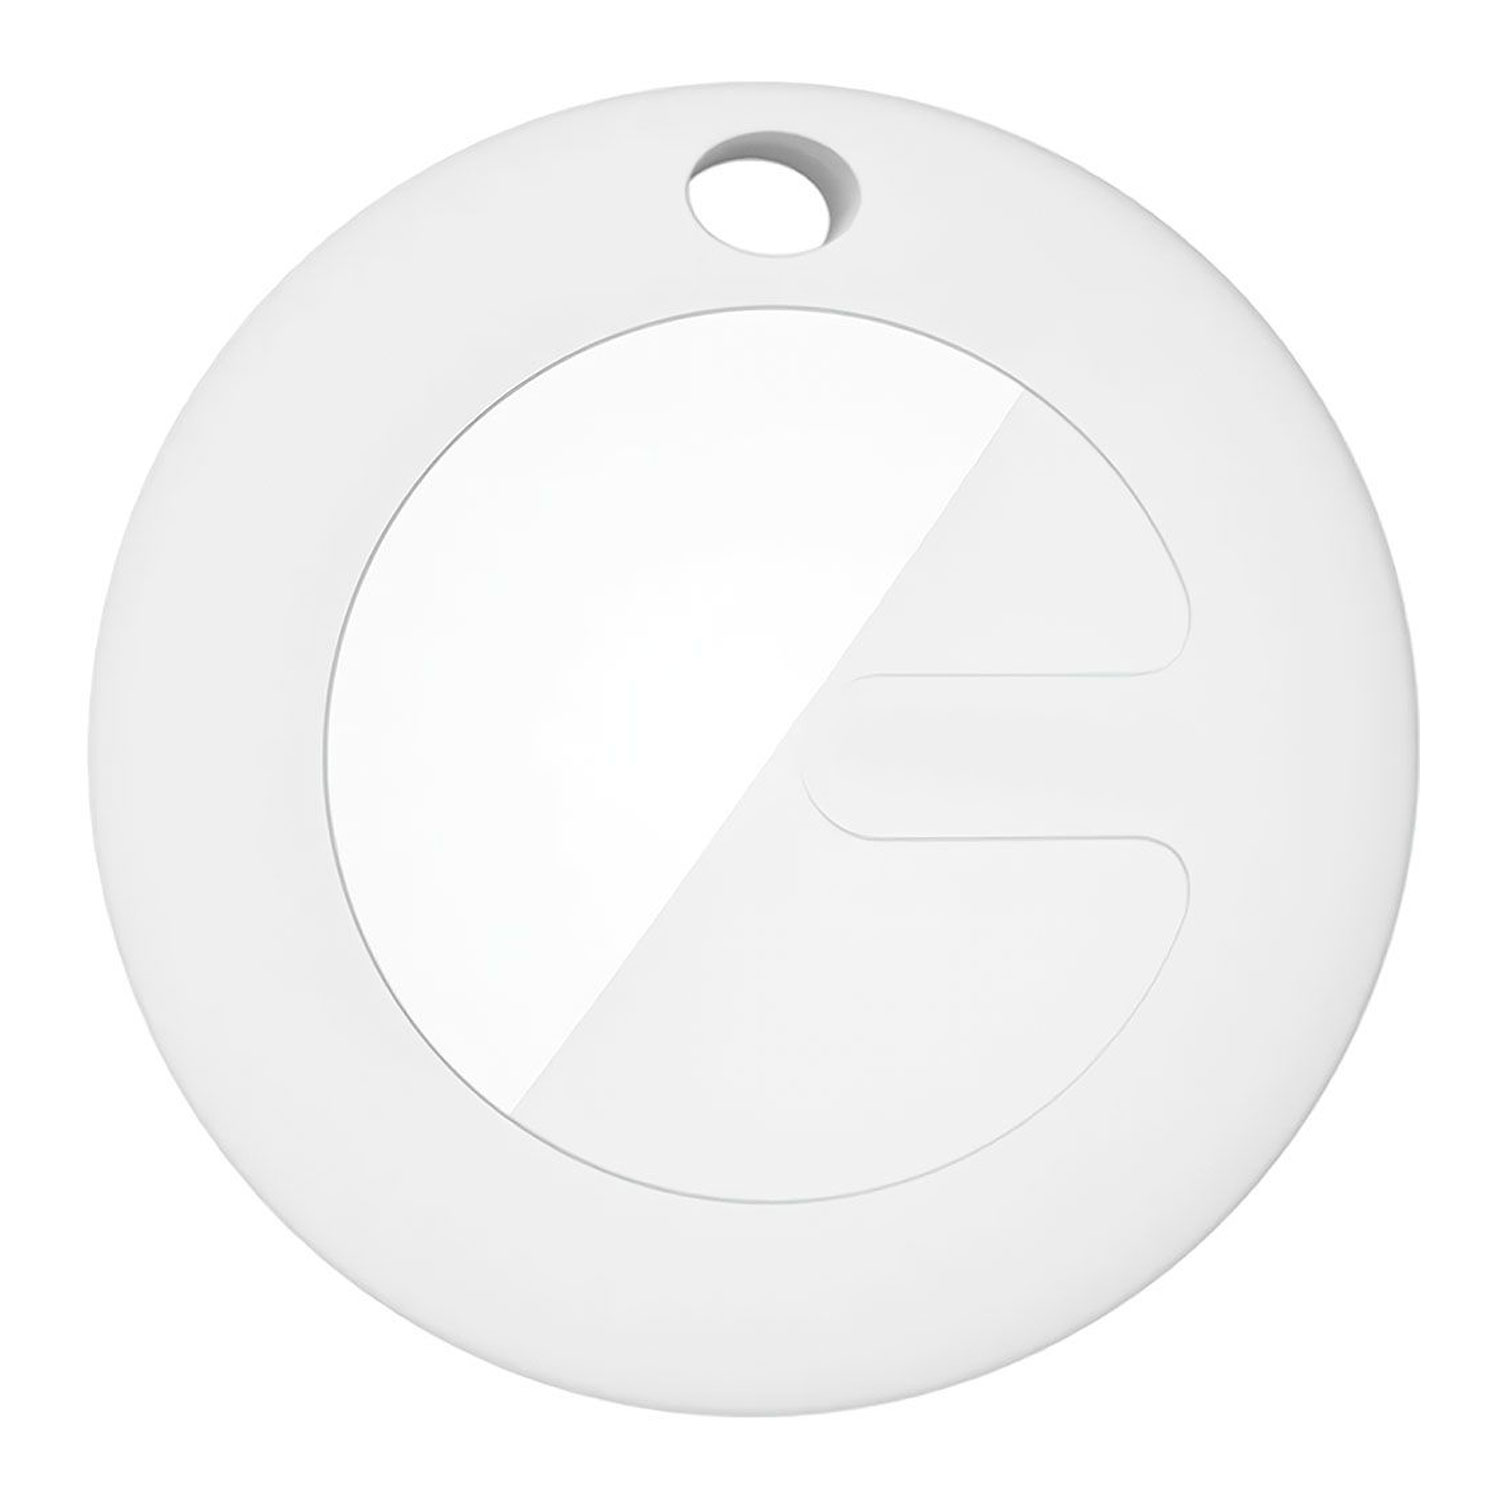 Localizador Divaki Mitag com chaveiro para iOS - Branco 
